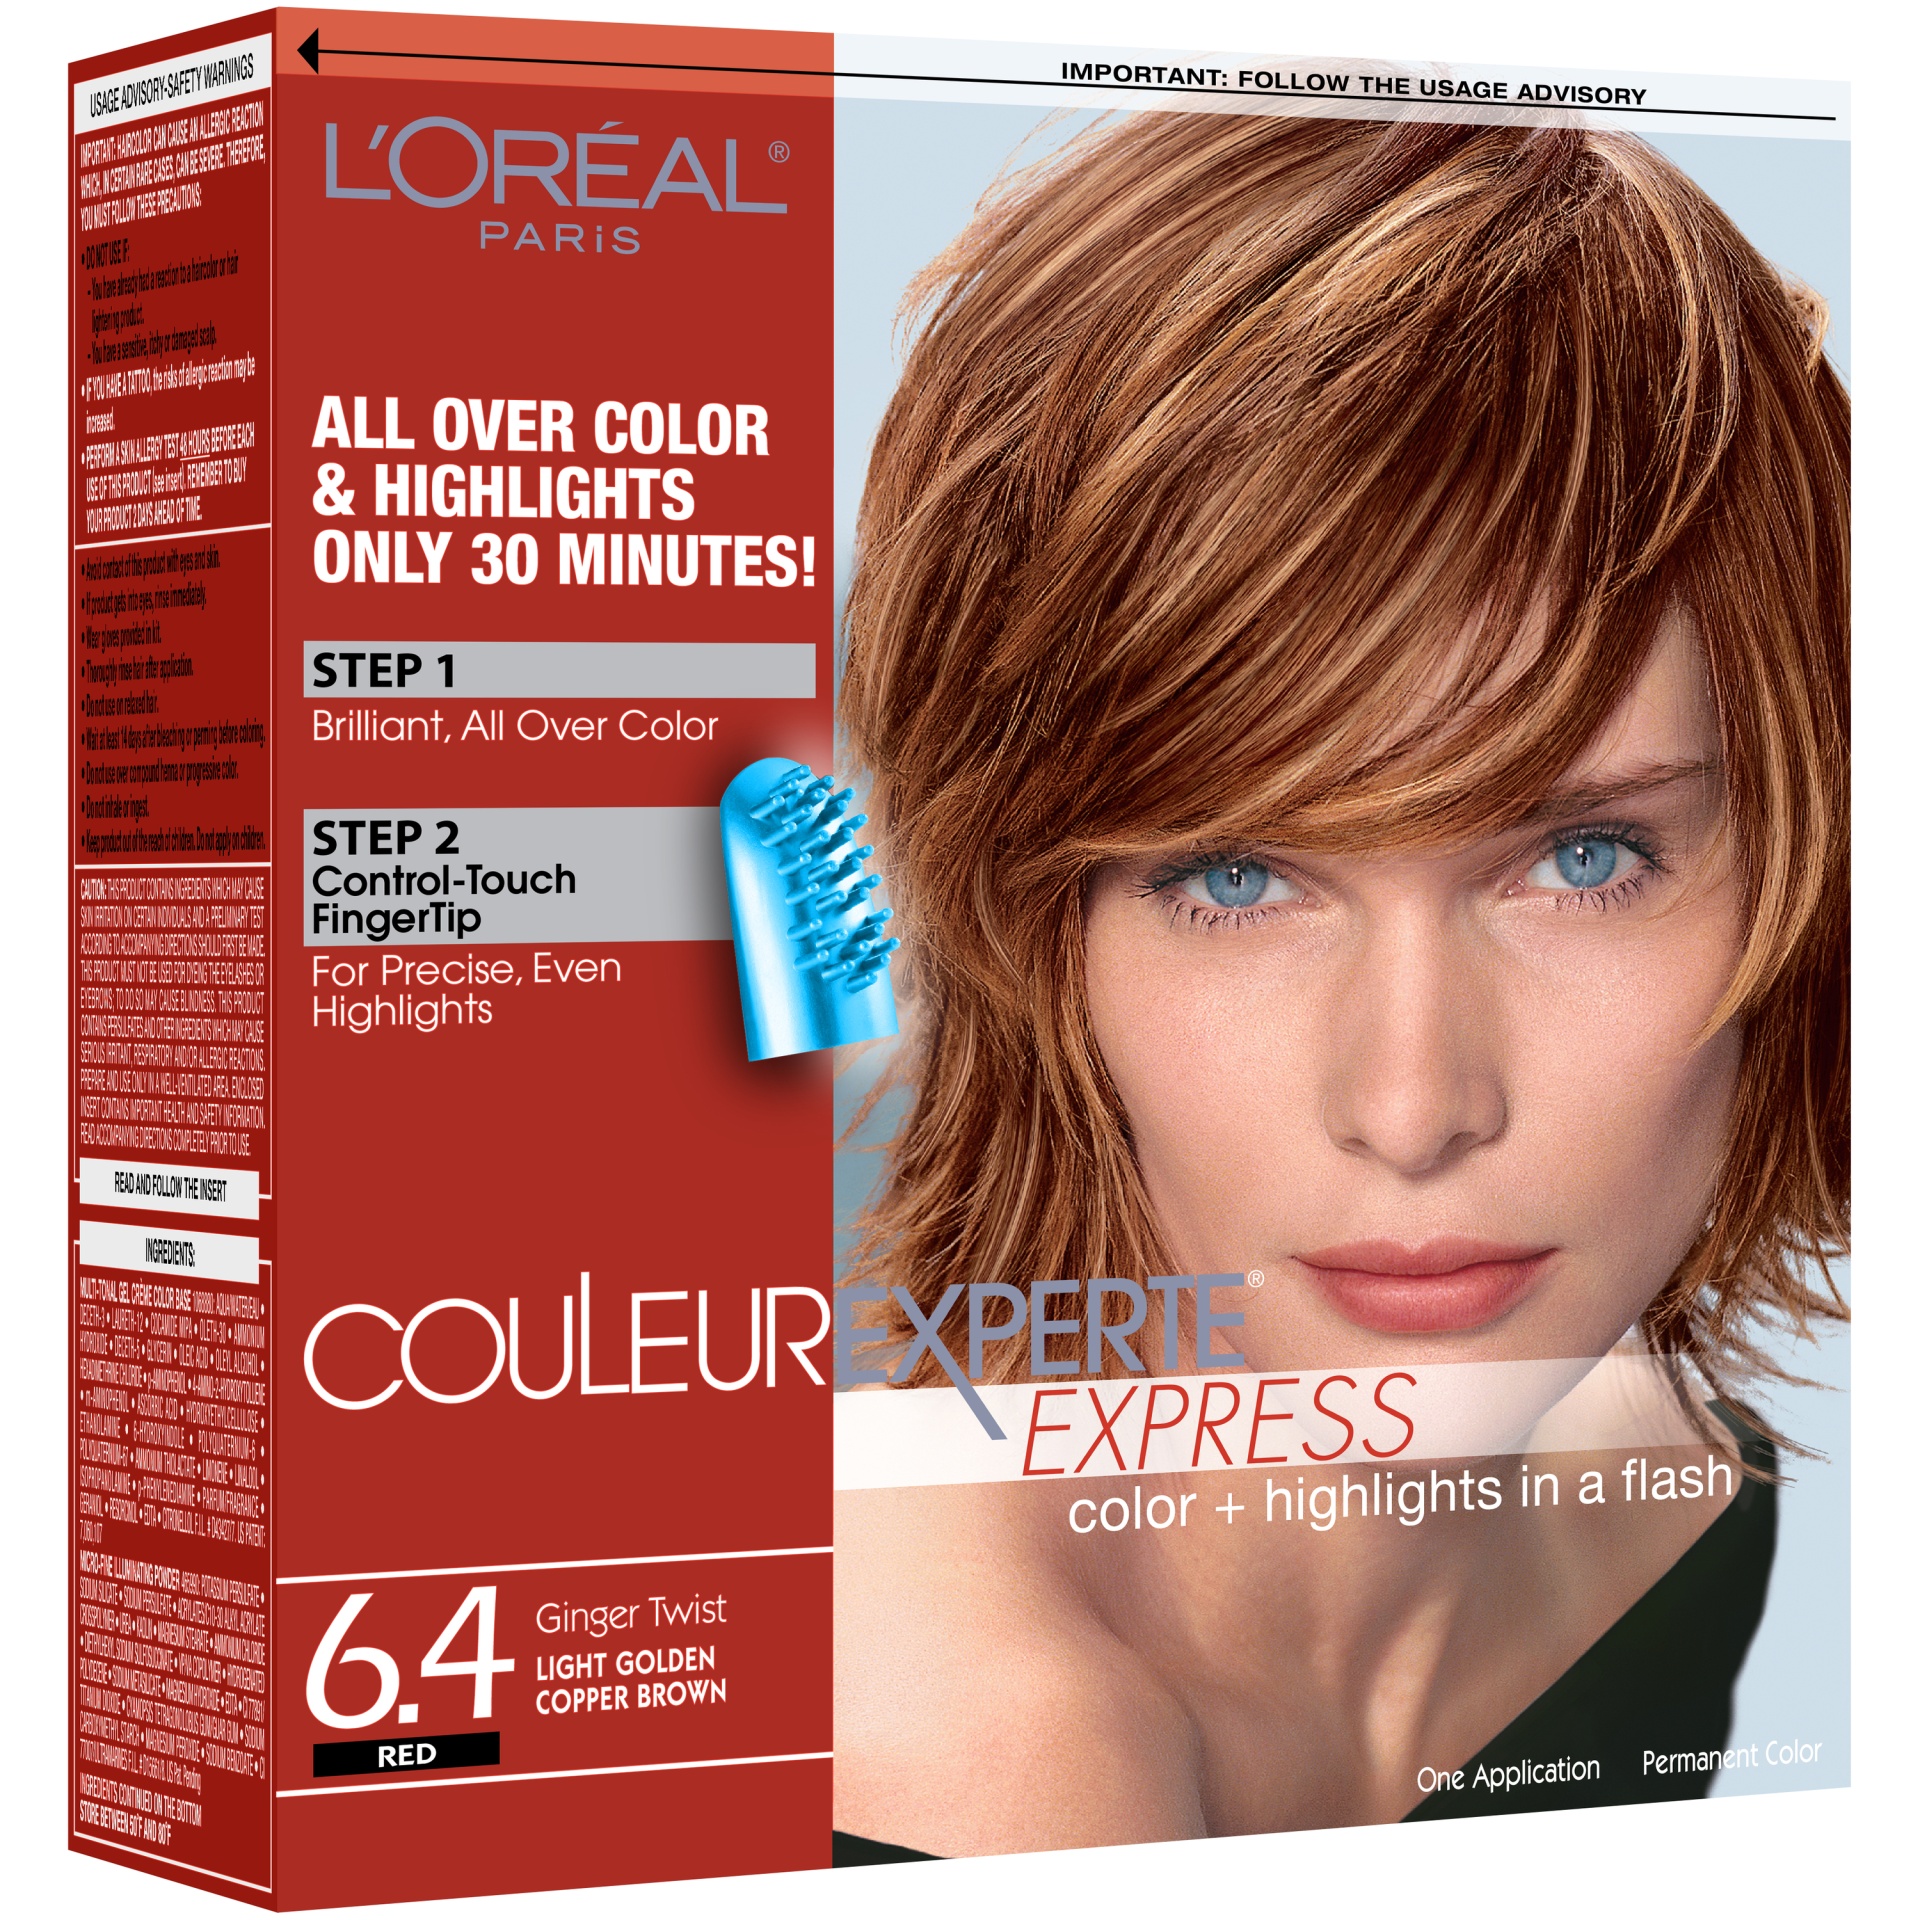 slide 3 of 8, L'Oréal Couleur Experte Express Color & Highlights in a Flash, Red Ginger Twist Light Golden Copper Brown 6.4, 1 kit